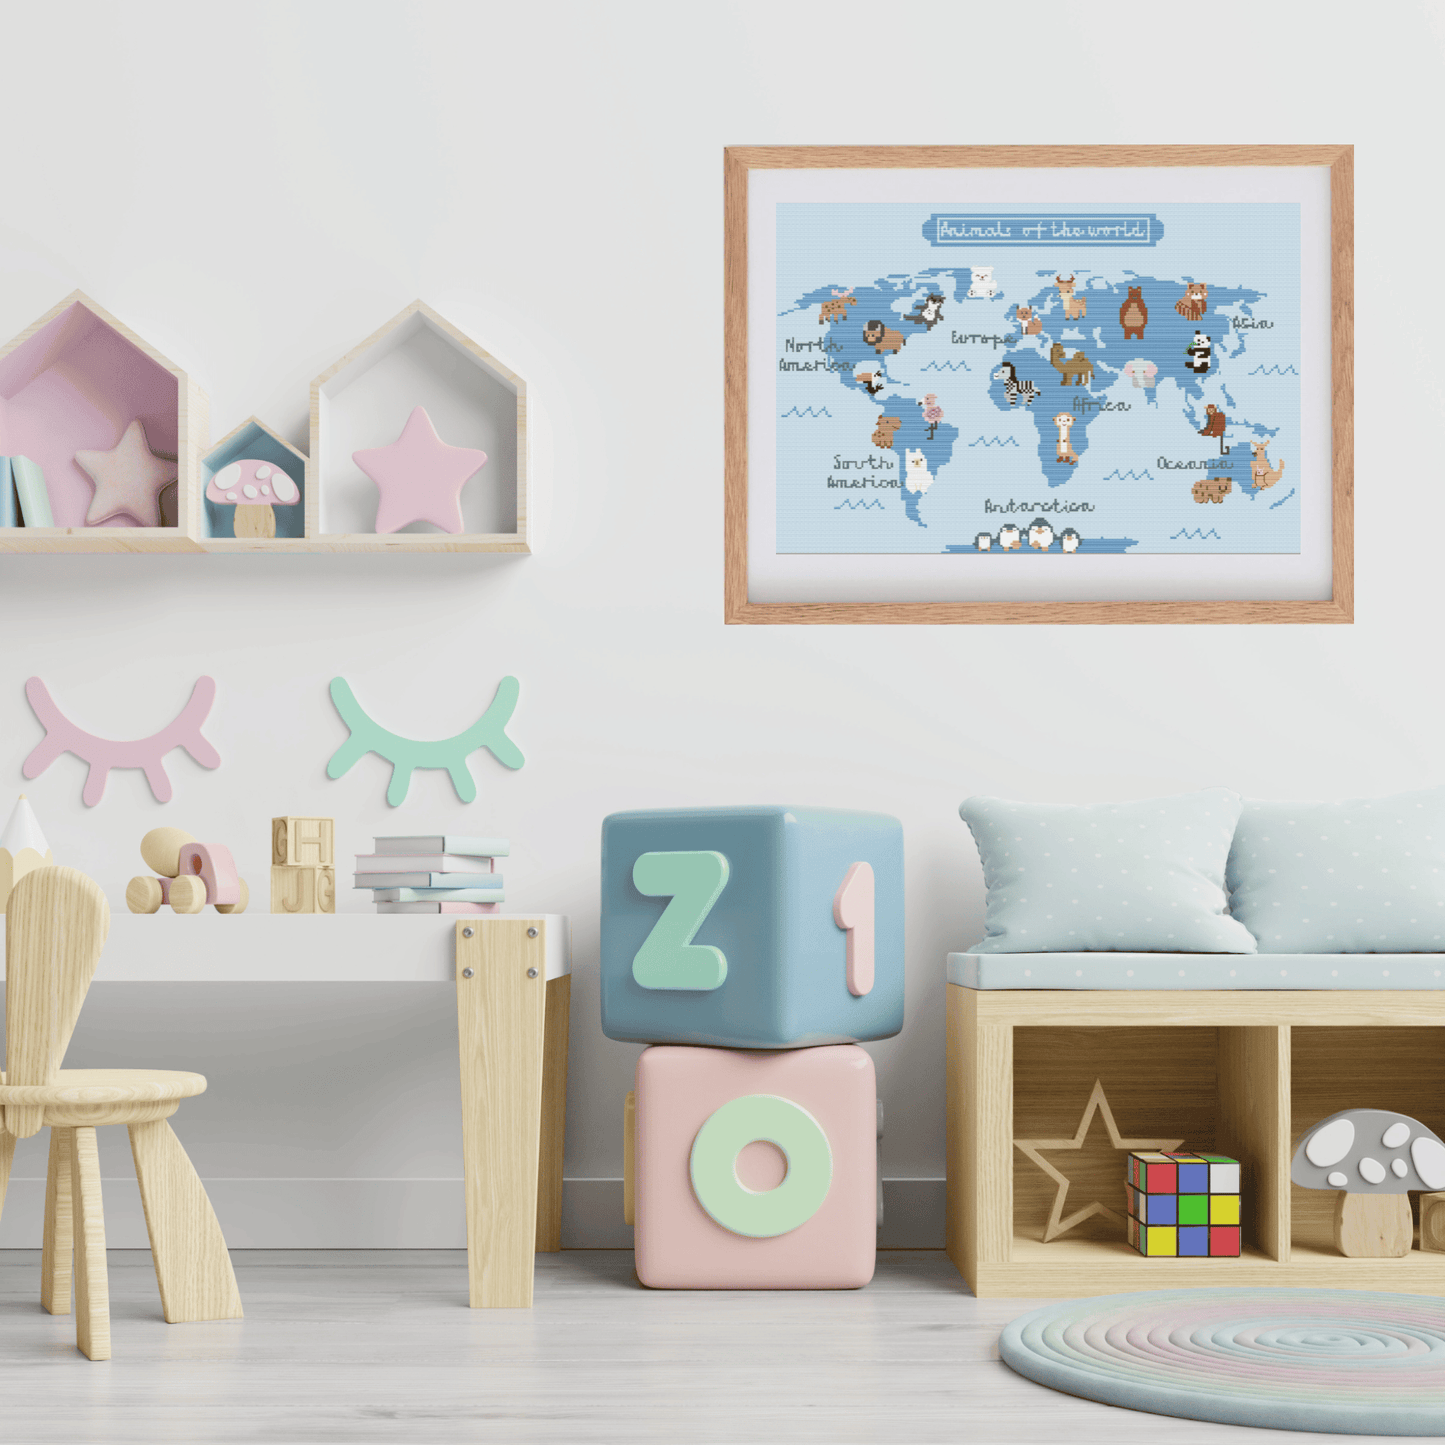 Animal mapamundi cross stitch pattern | World Map With Animals Cross Stitch | Nursery Decoration Cross Stitch